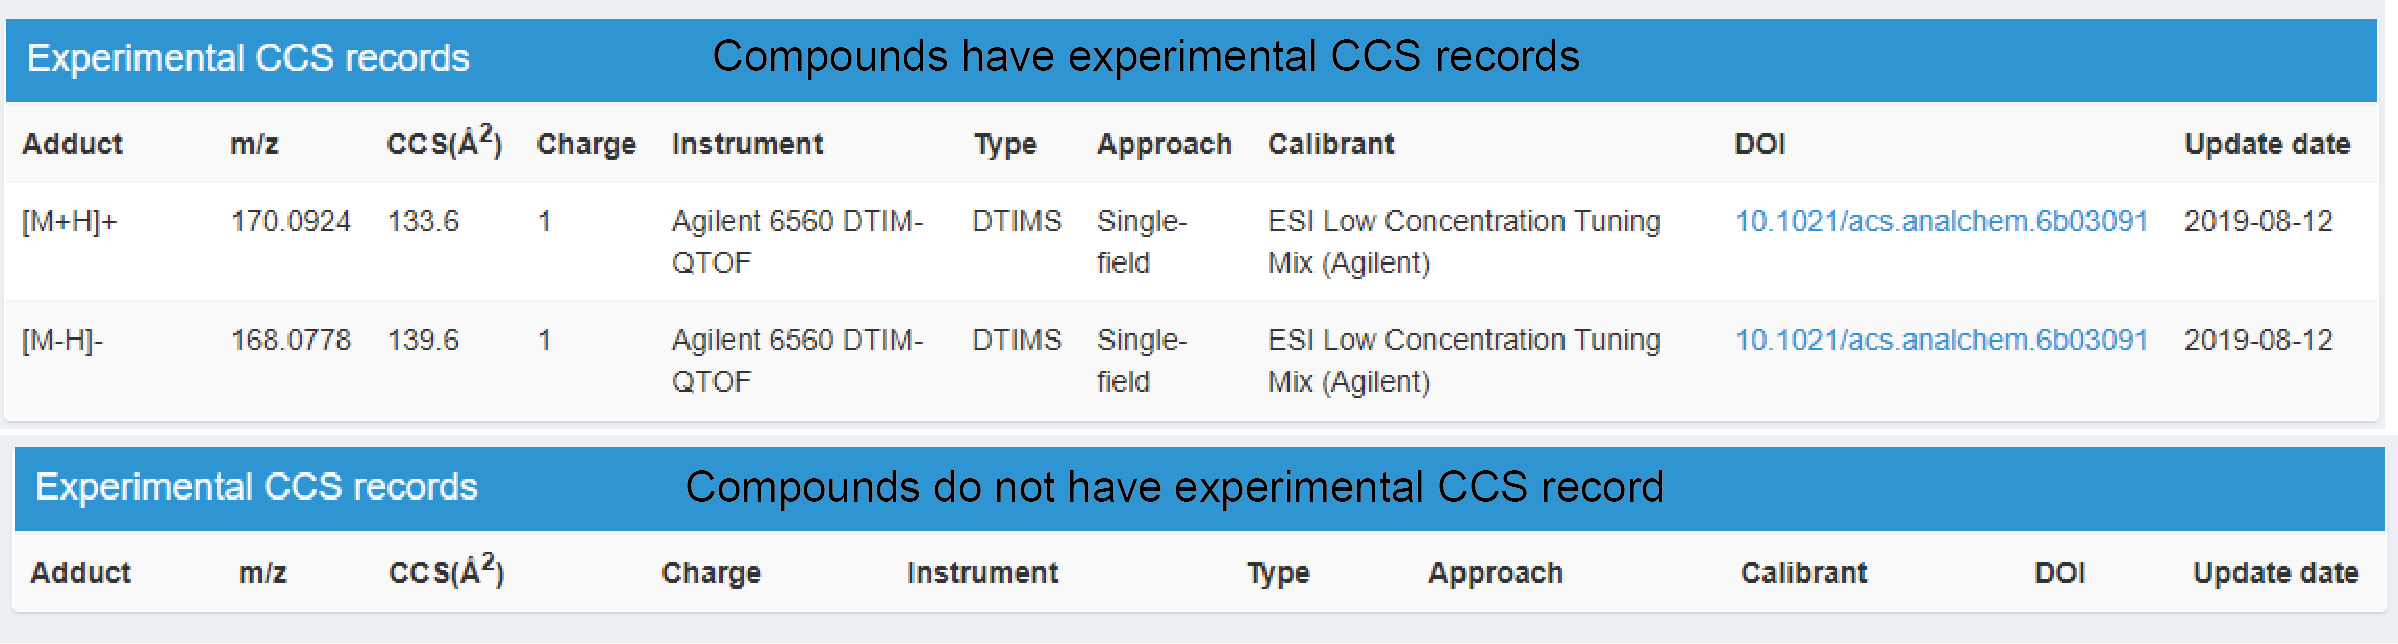 Experimental CCS records